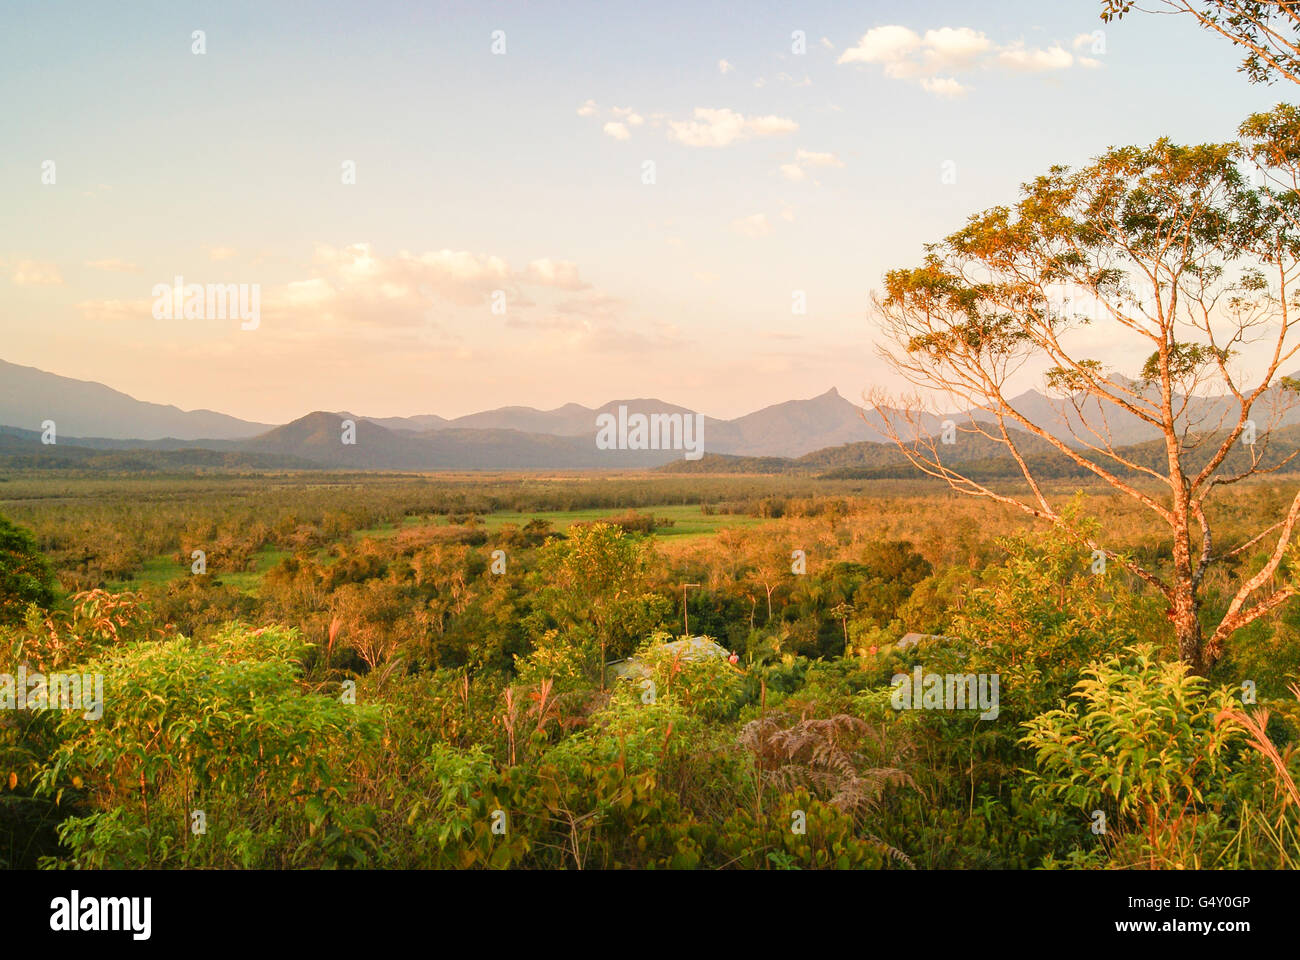 Brasilien, Parque Nacional de Saint-Hilaire / Lange, Nature reserve, schöne Aussicht von der Parque Nacional de Saint-Hilaire / lange, Serra do Mar Stockfoto